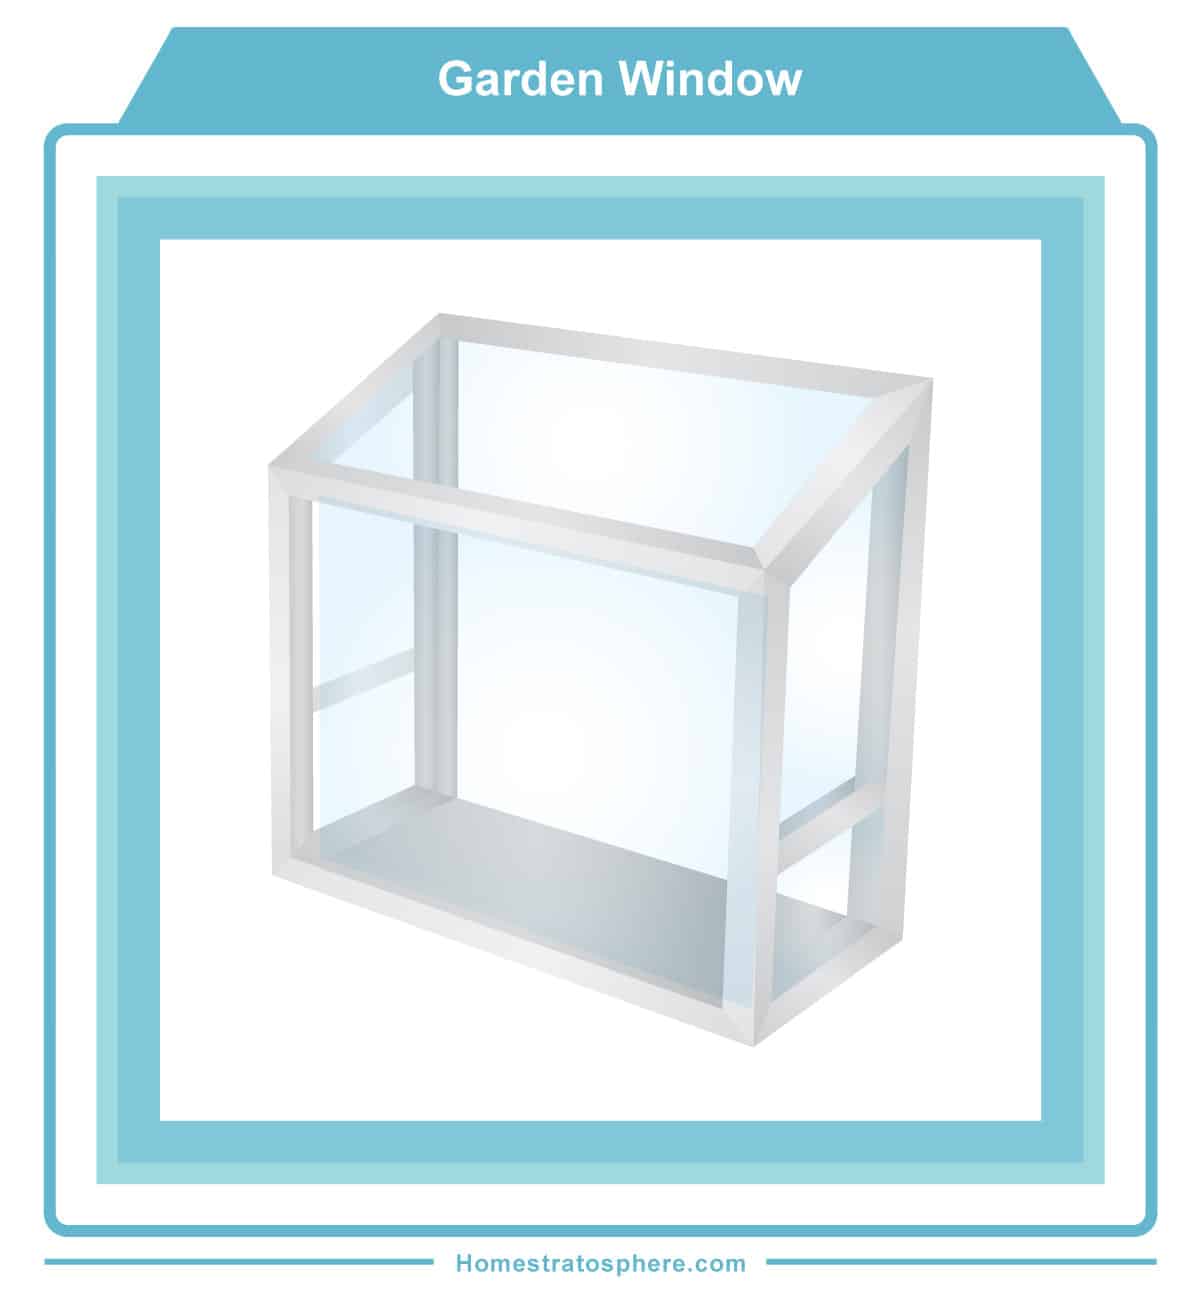 庭院样式窗口为户内种植草药和植物（图）